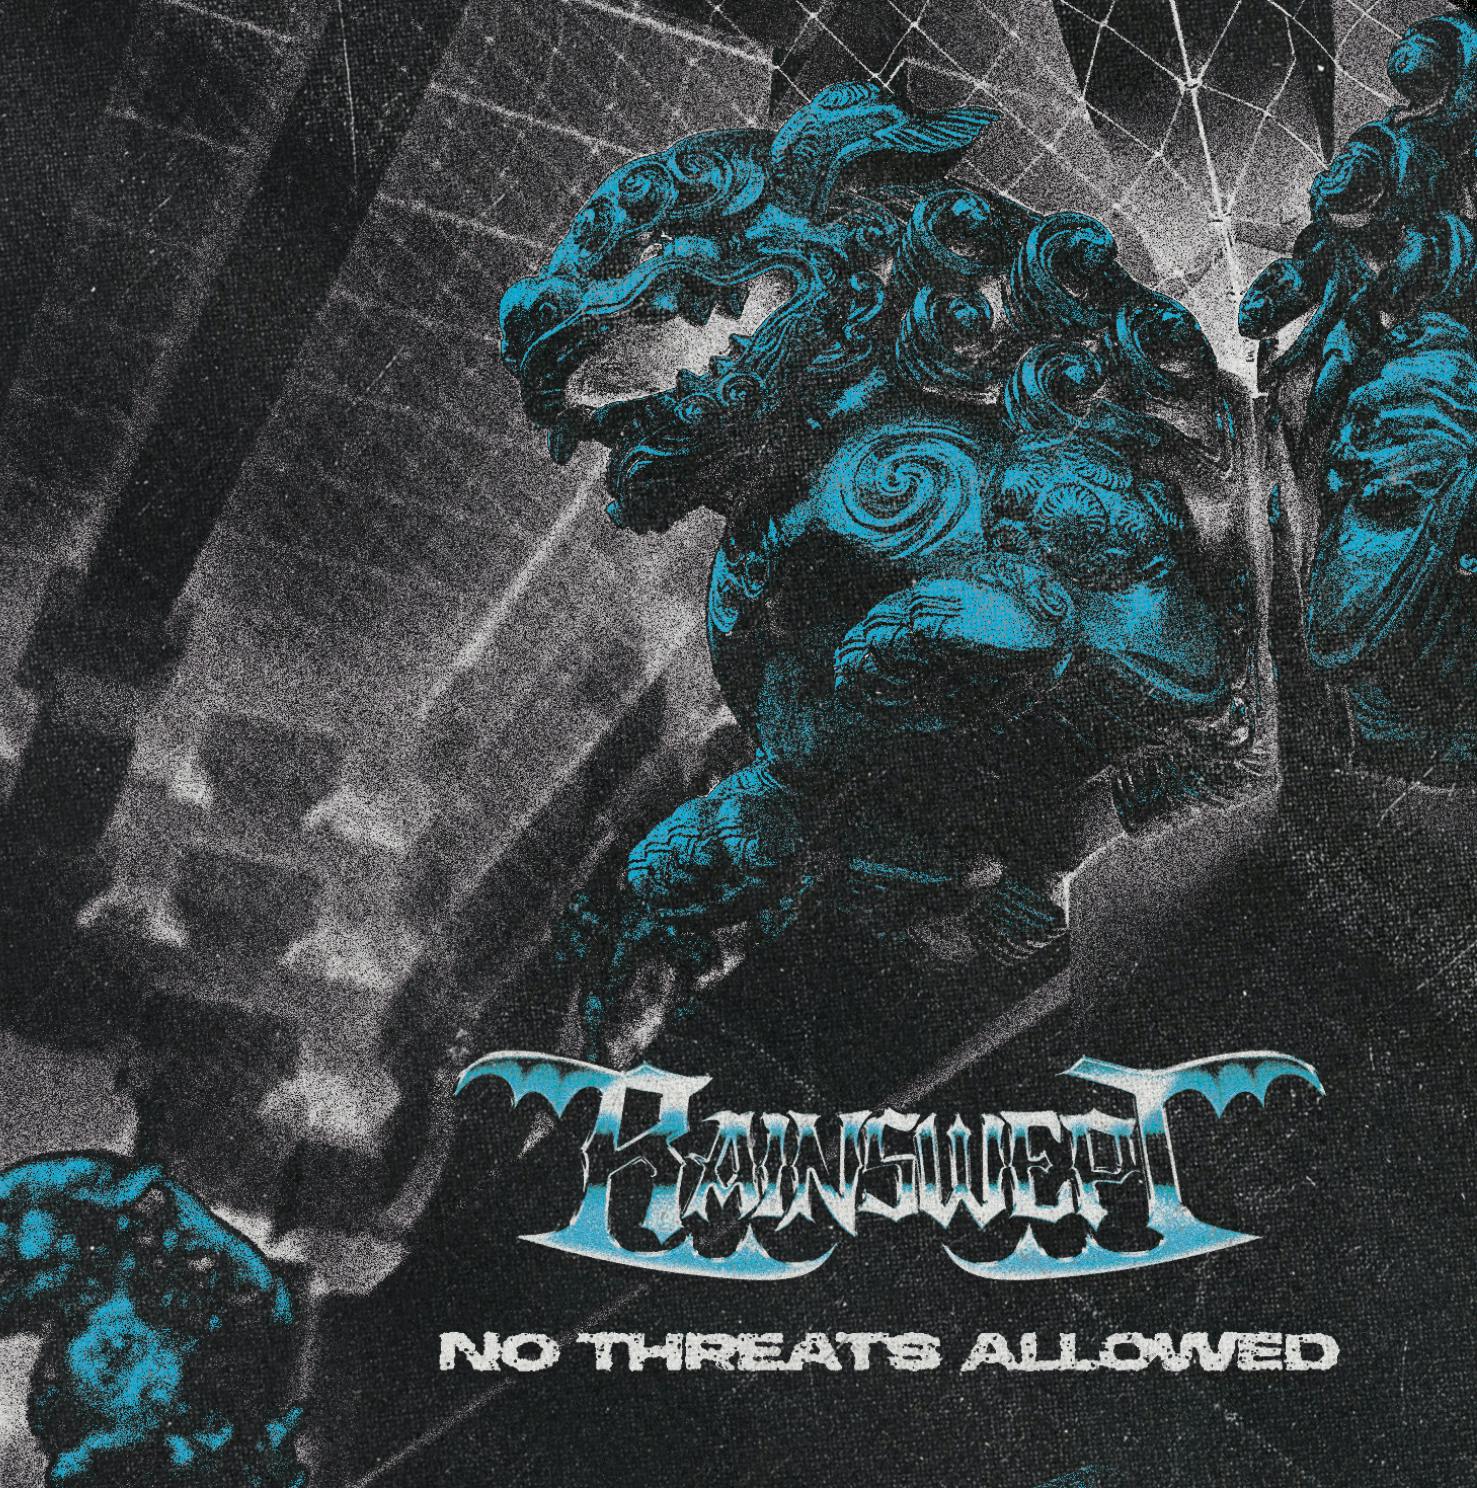 RAINSWEPT: il gruppo hardcore romano presenta il singolo “Diss Days”, brano estratto dal debut album “No Threats Allowed”